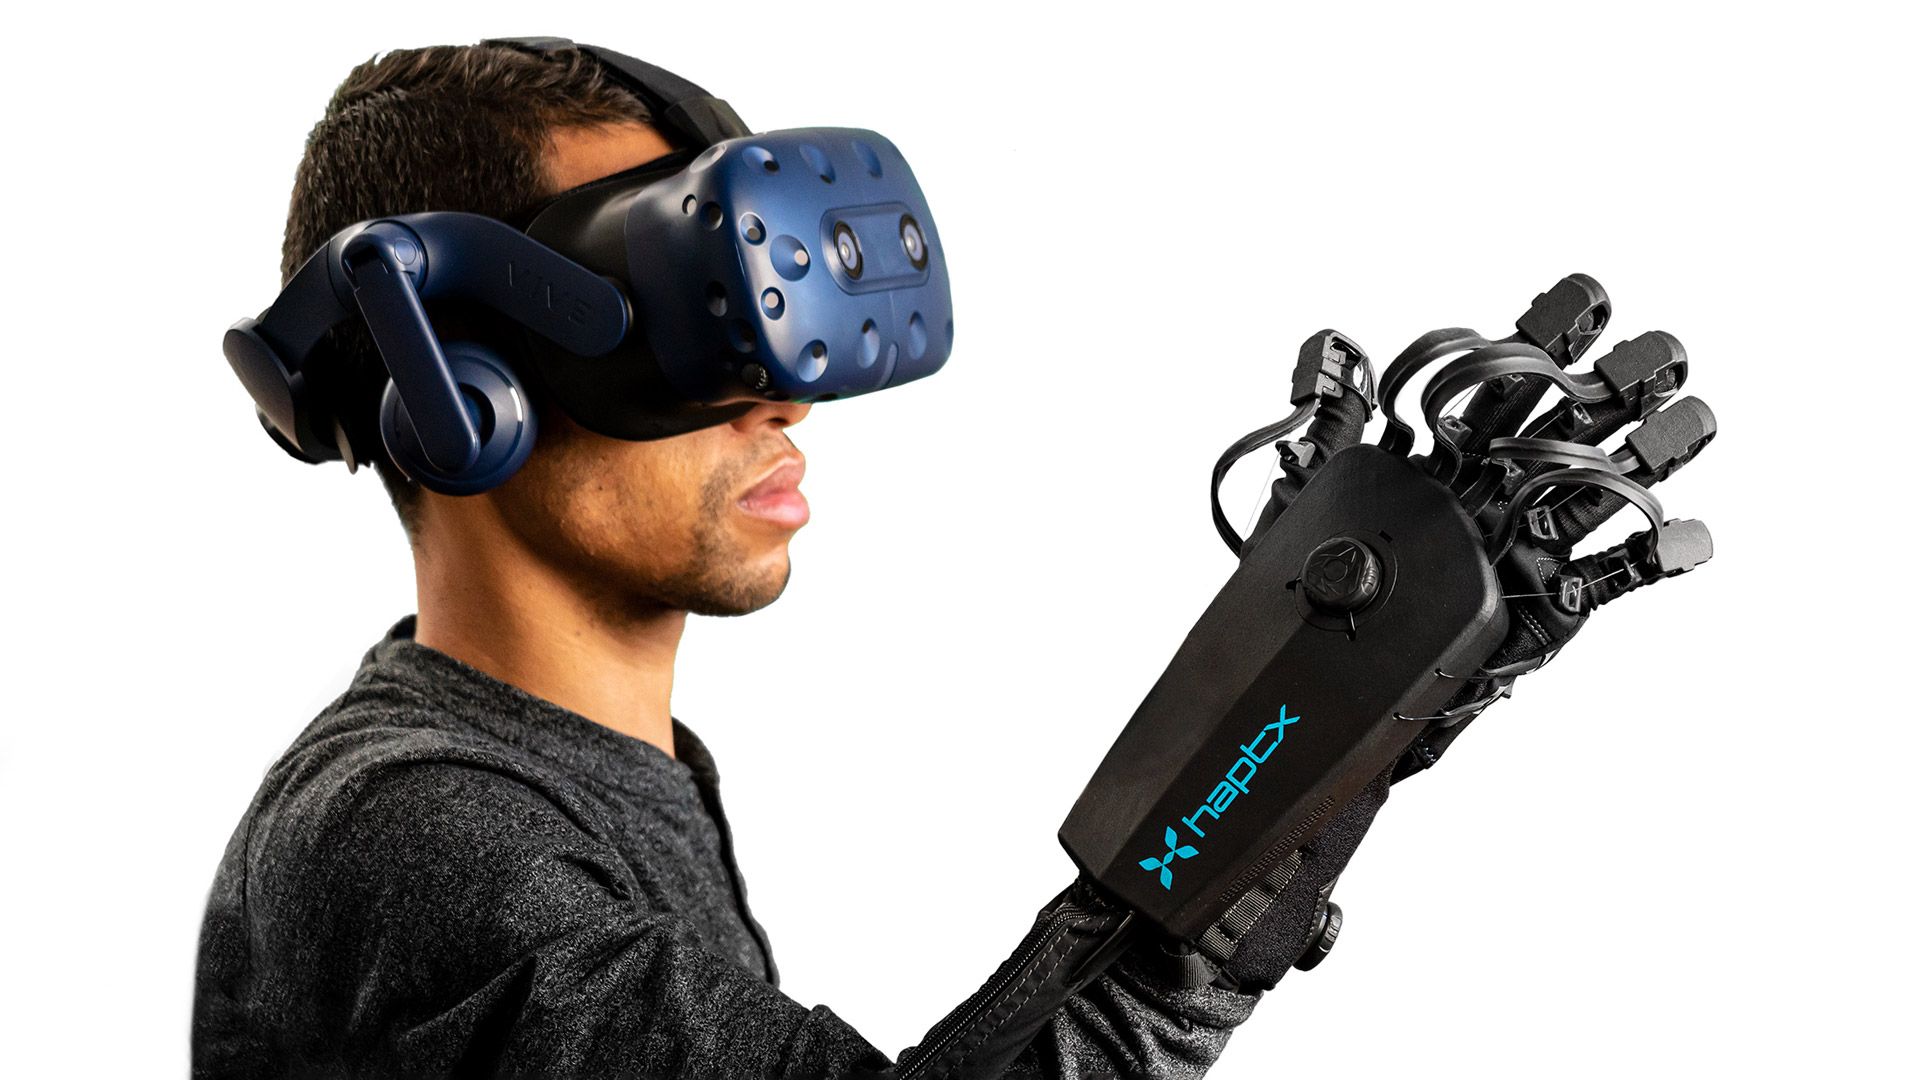 Une startup basée à Seattle qualifie le prototype de gant Meta VR d'"identique" à sa propre technologie brevetée